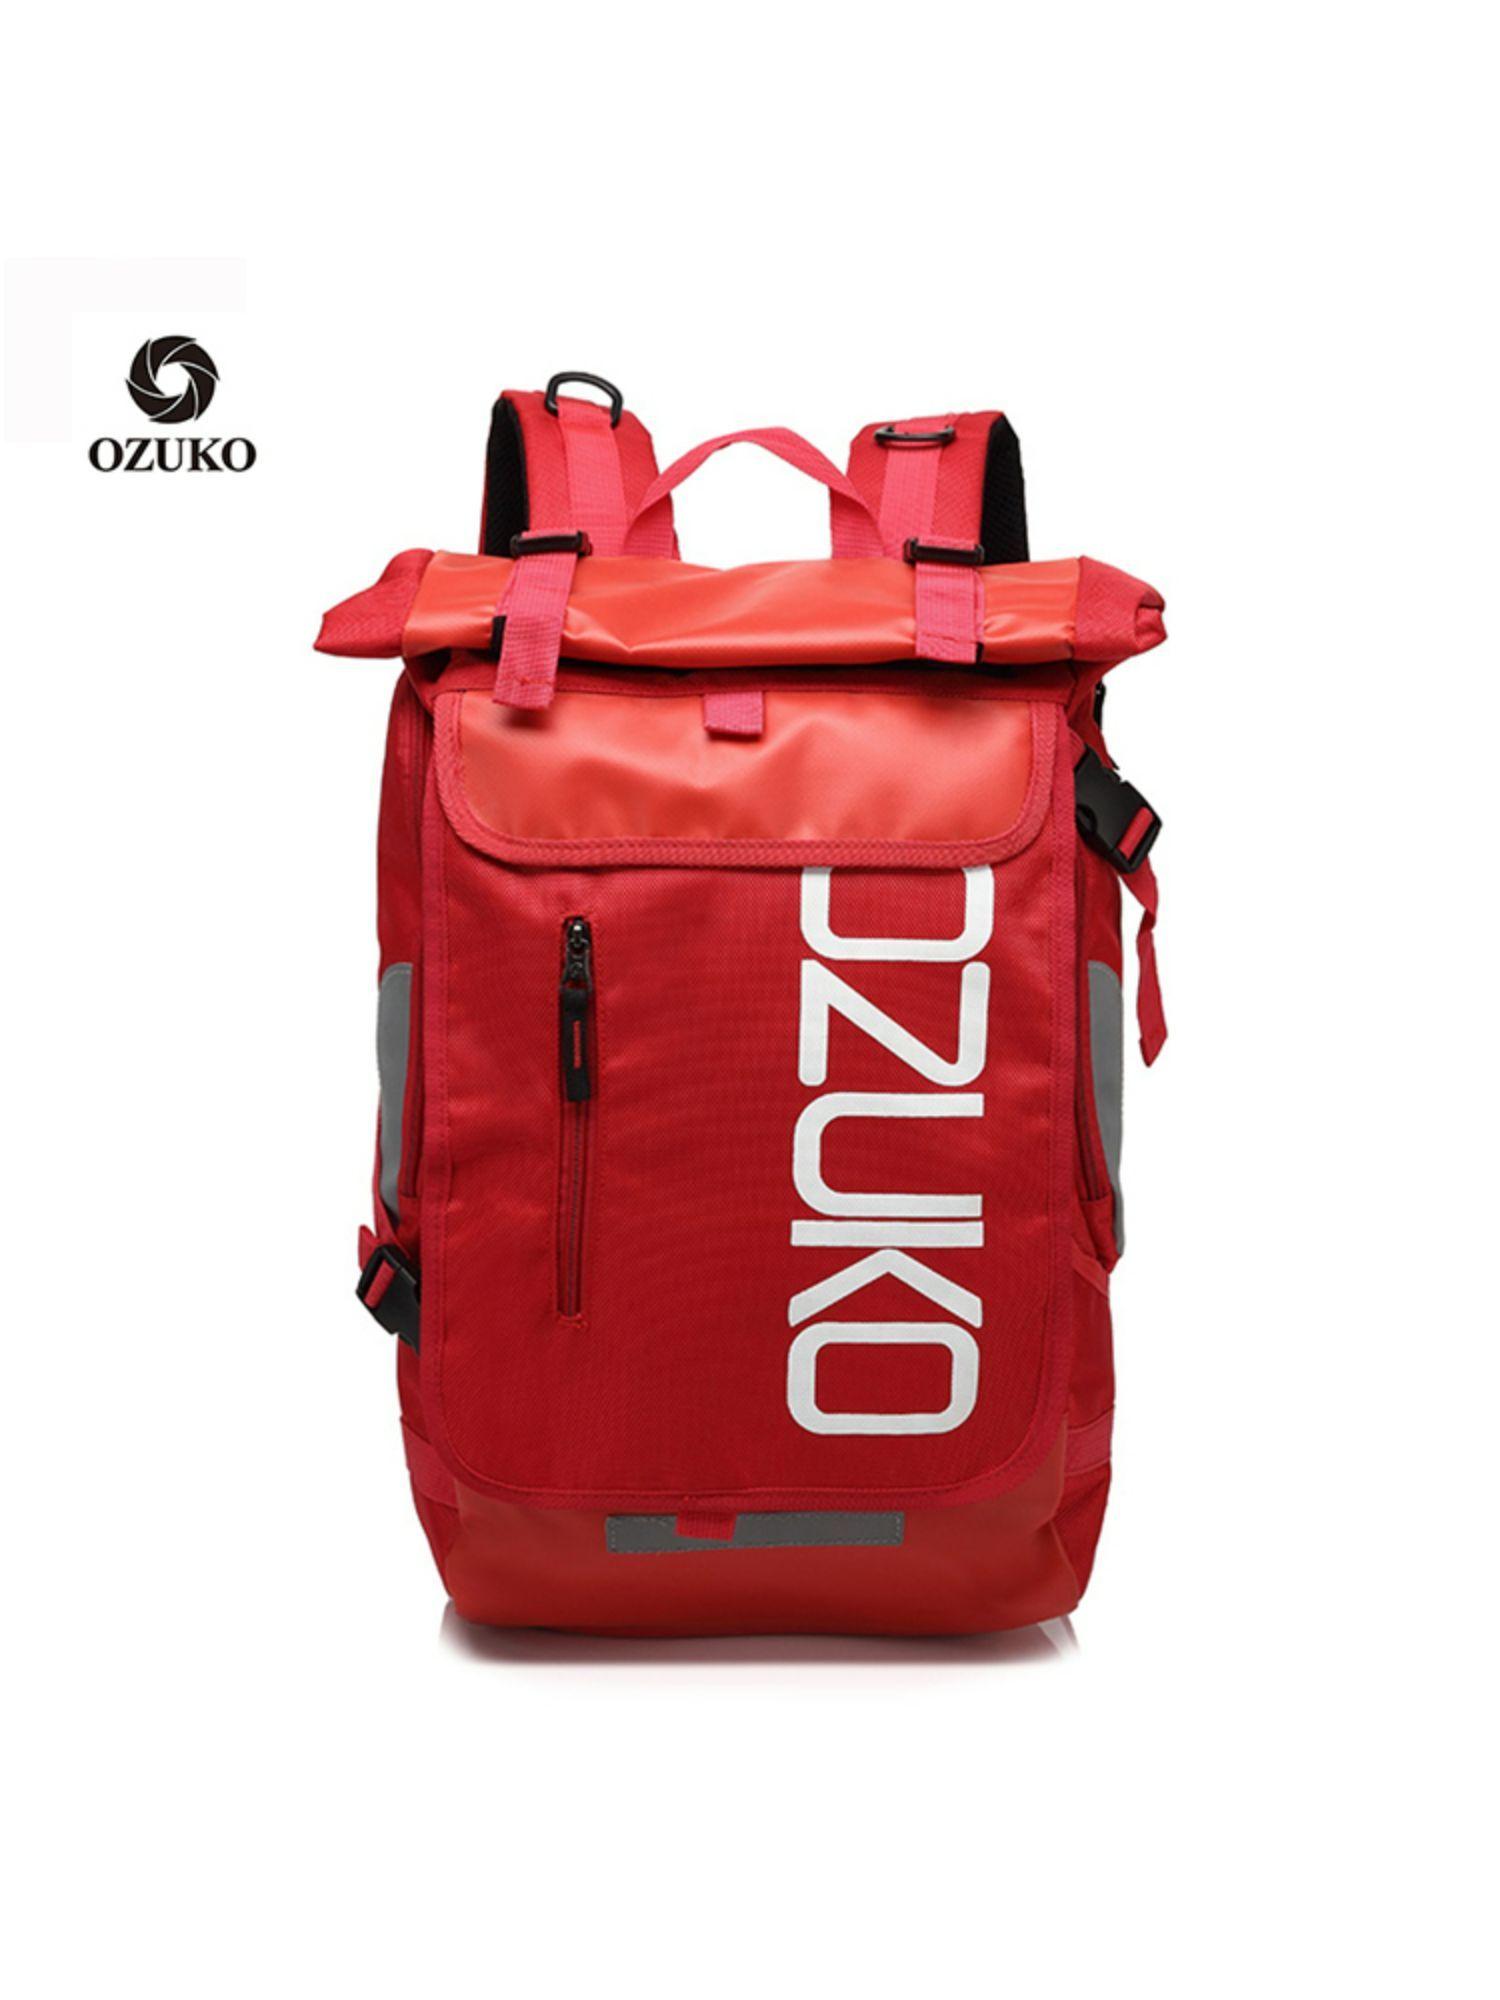 8020-range-red-color-soft-case-backpack